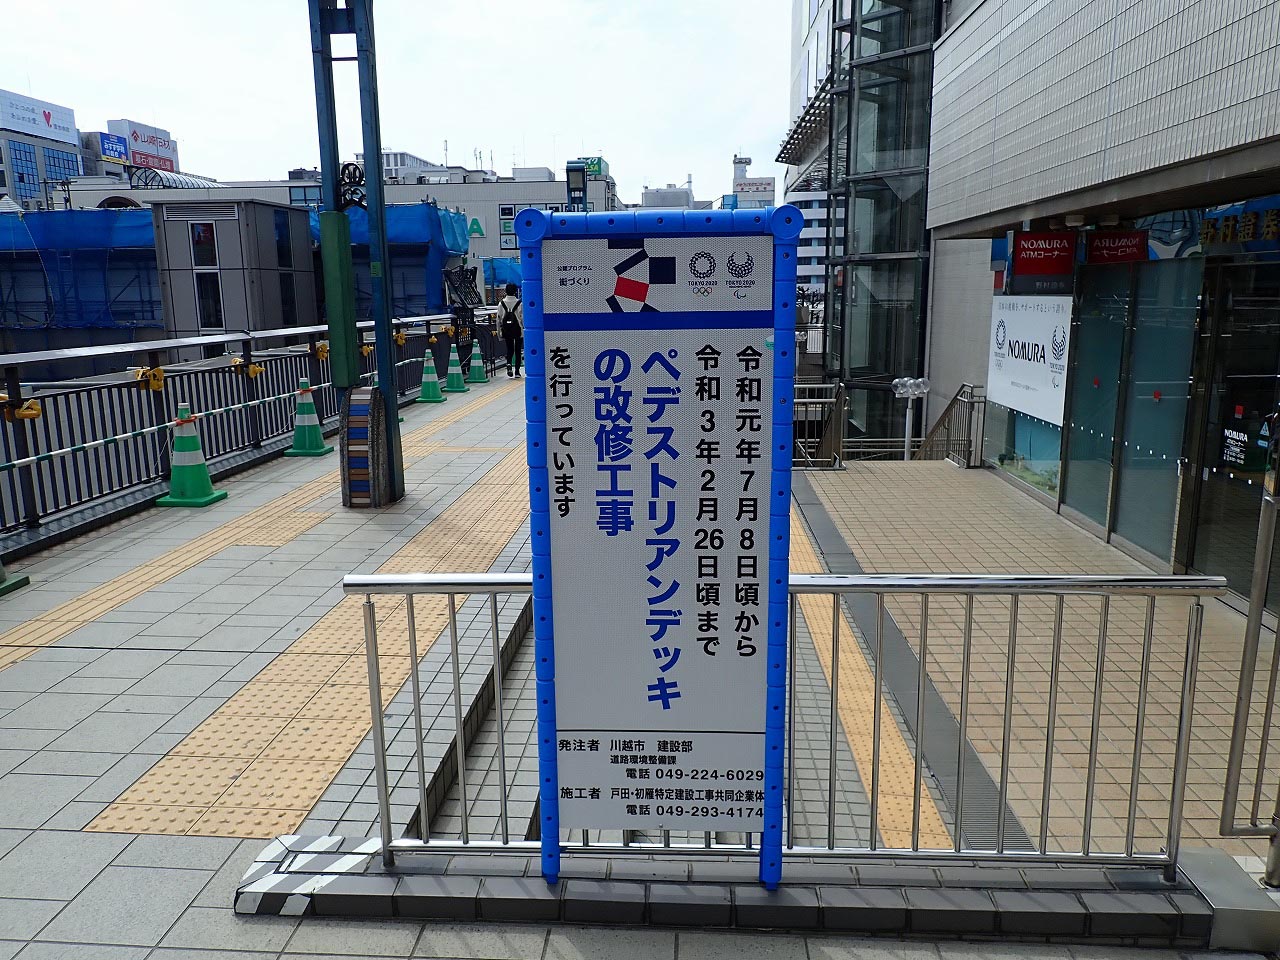 川越駅東口の改修工事の終了予定の案内